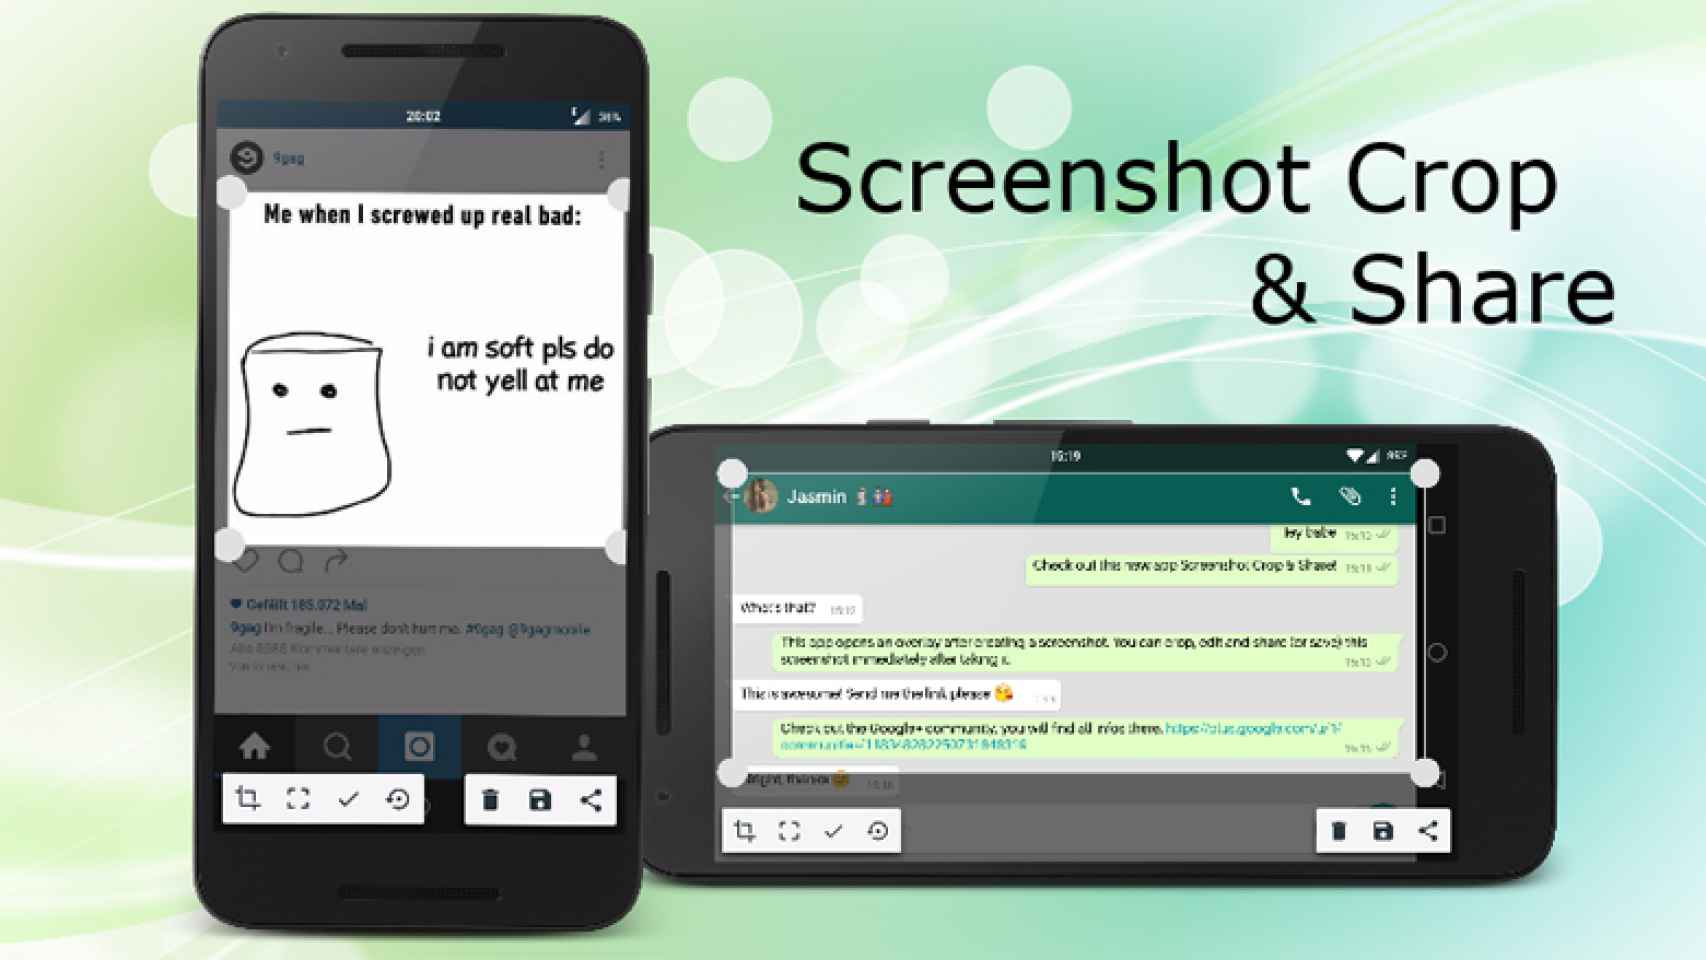 Haz capturas de pantalla, recórtalas y compártelas por WhatsApp desde el mismo menú